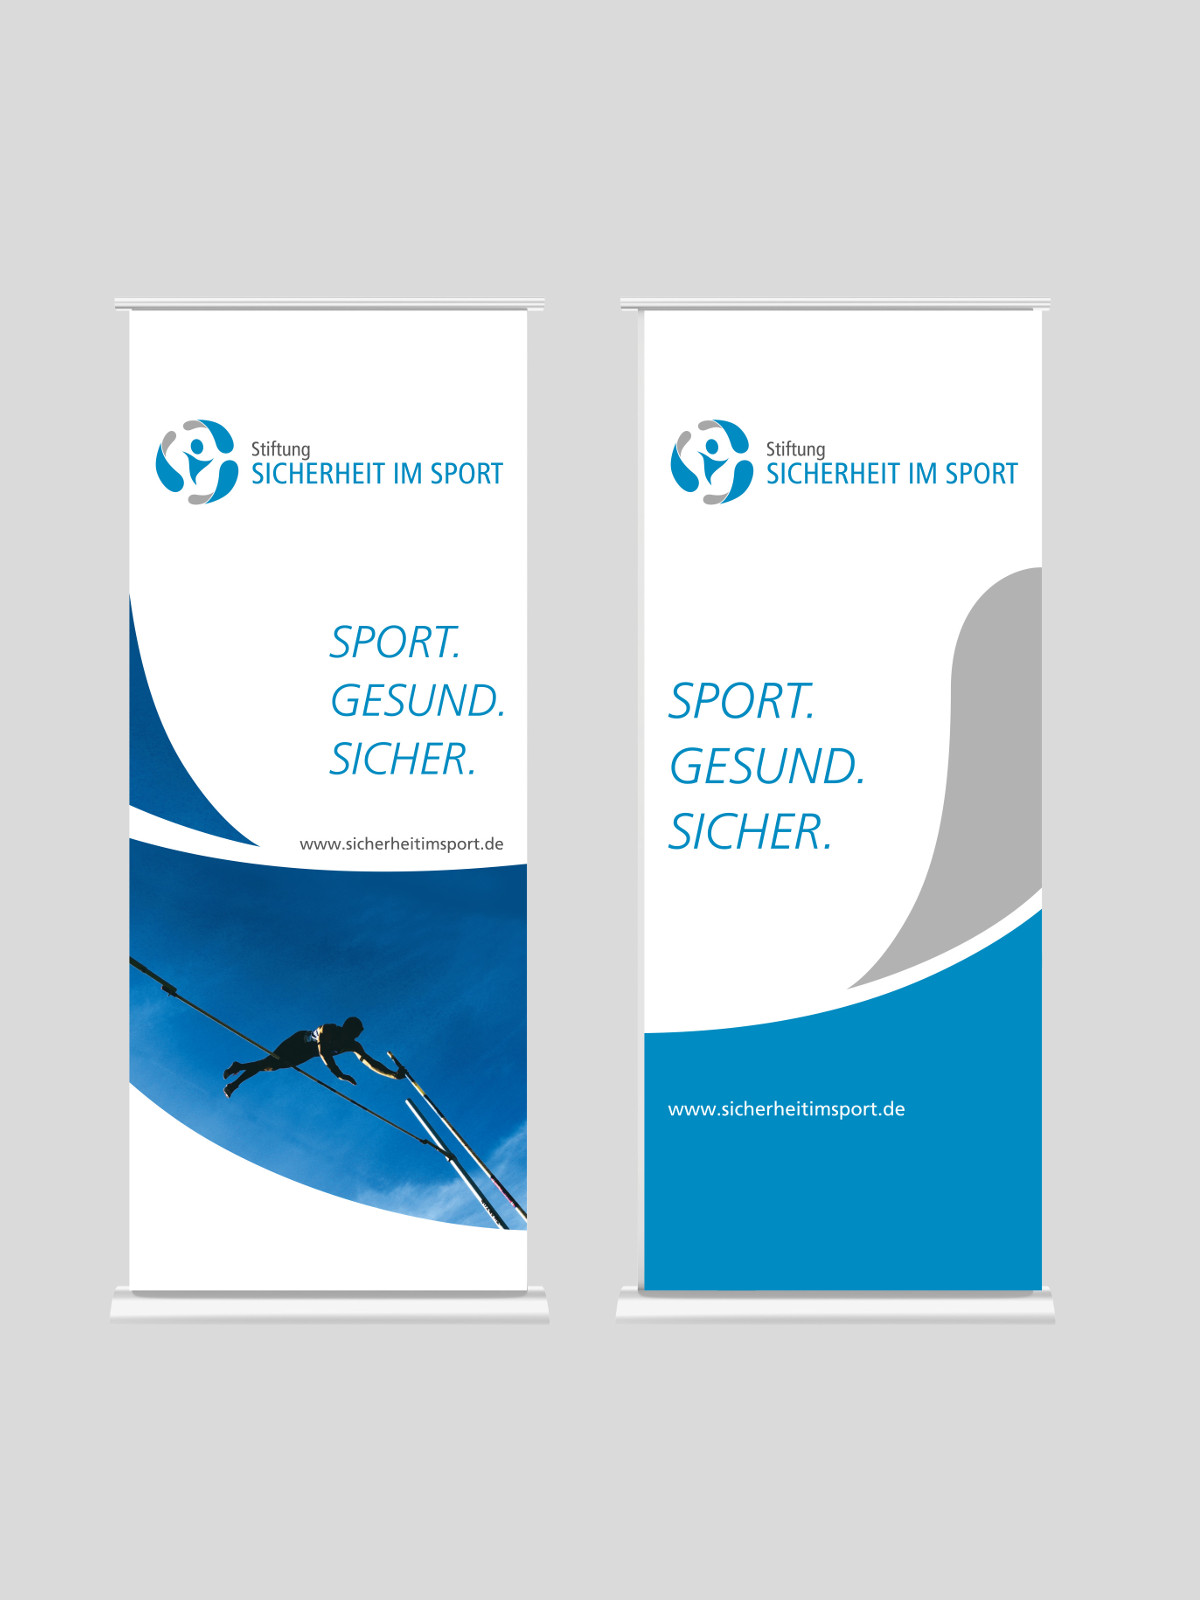 Stiftung Sicherheit im Sport aus Bochum | Woestmann Design | woestmanndesign.de